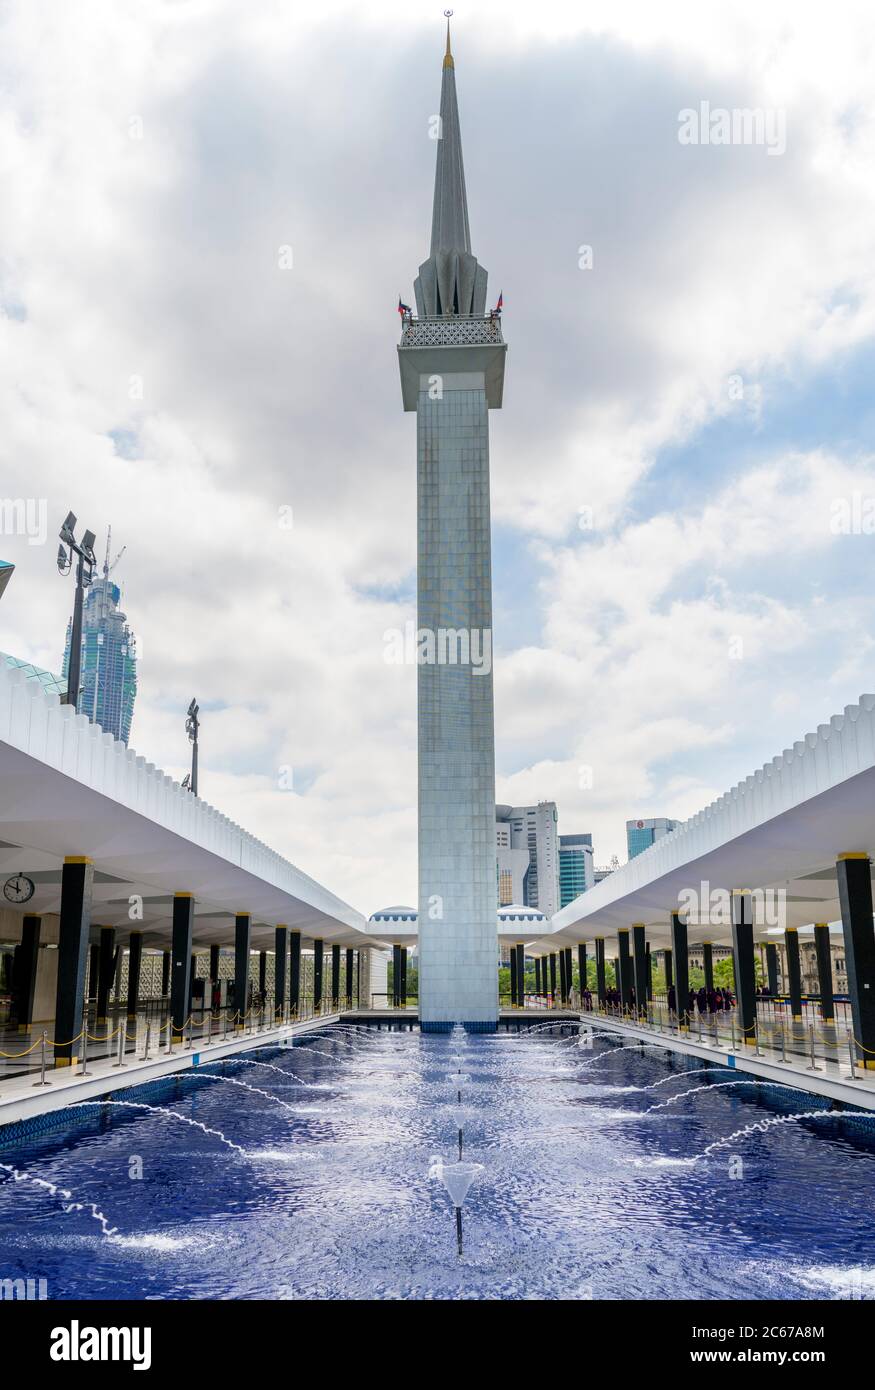 Le minaret de la Mosquée nationale de Malaisie (Masjid Negara Malaysia), Kuala Lumpur, Malaisie Banque D'Images